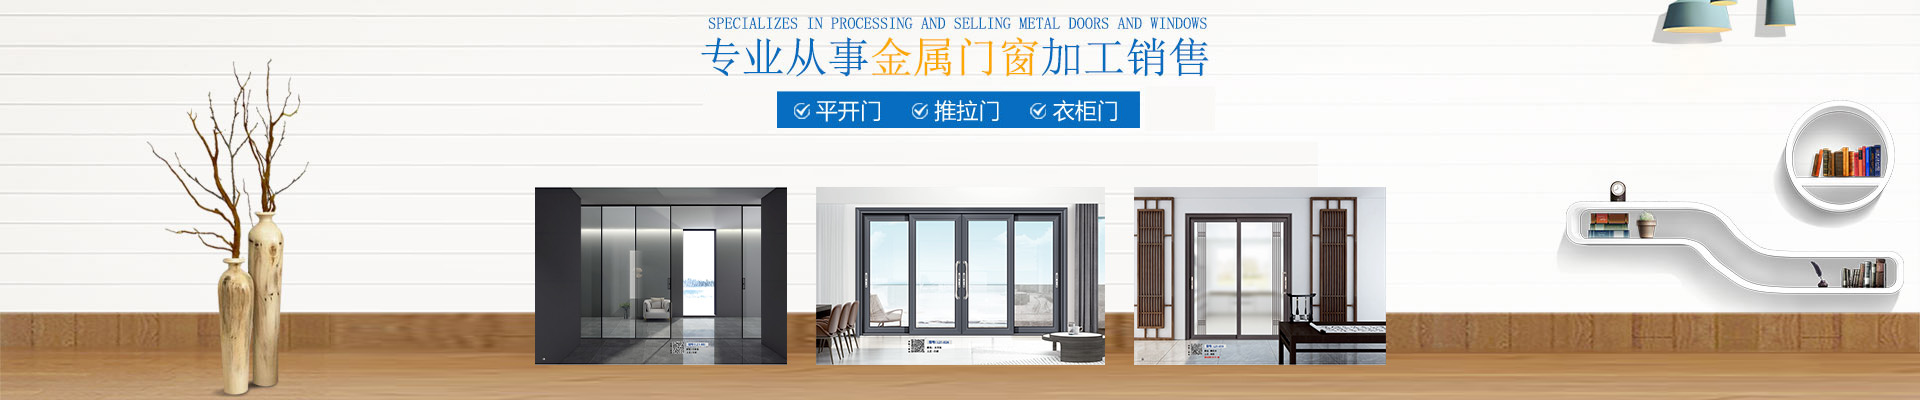 林炫门窗_门窗生产厂家|门窗研发设计|推拉门